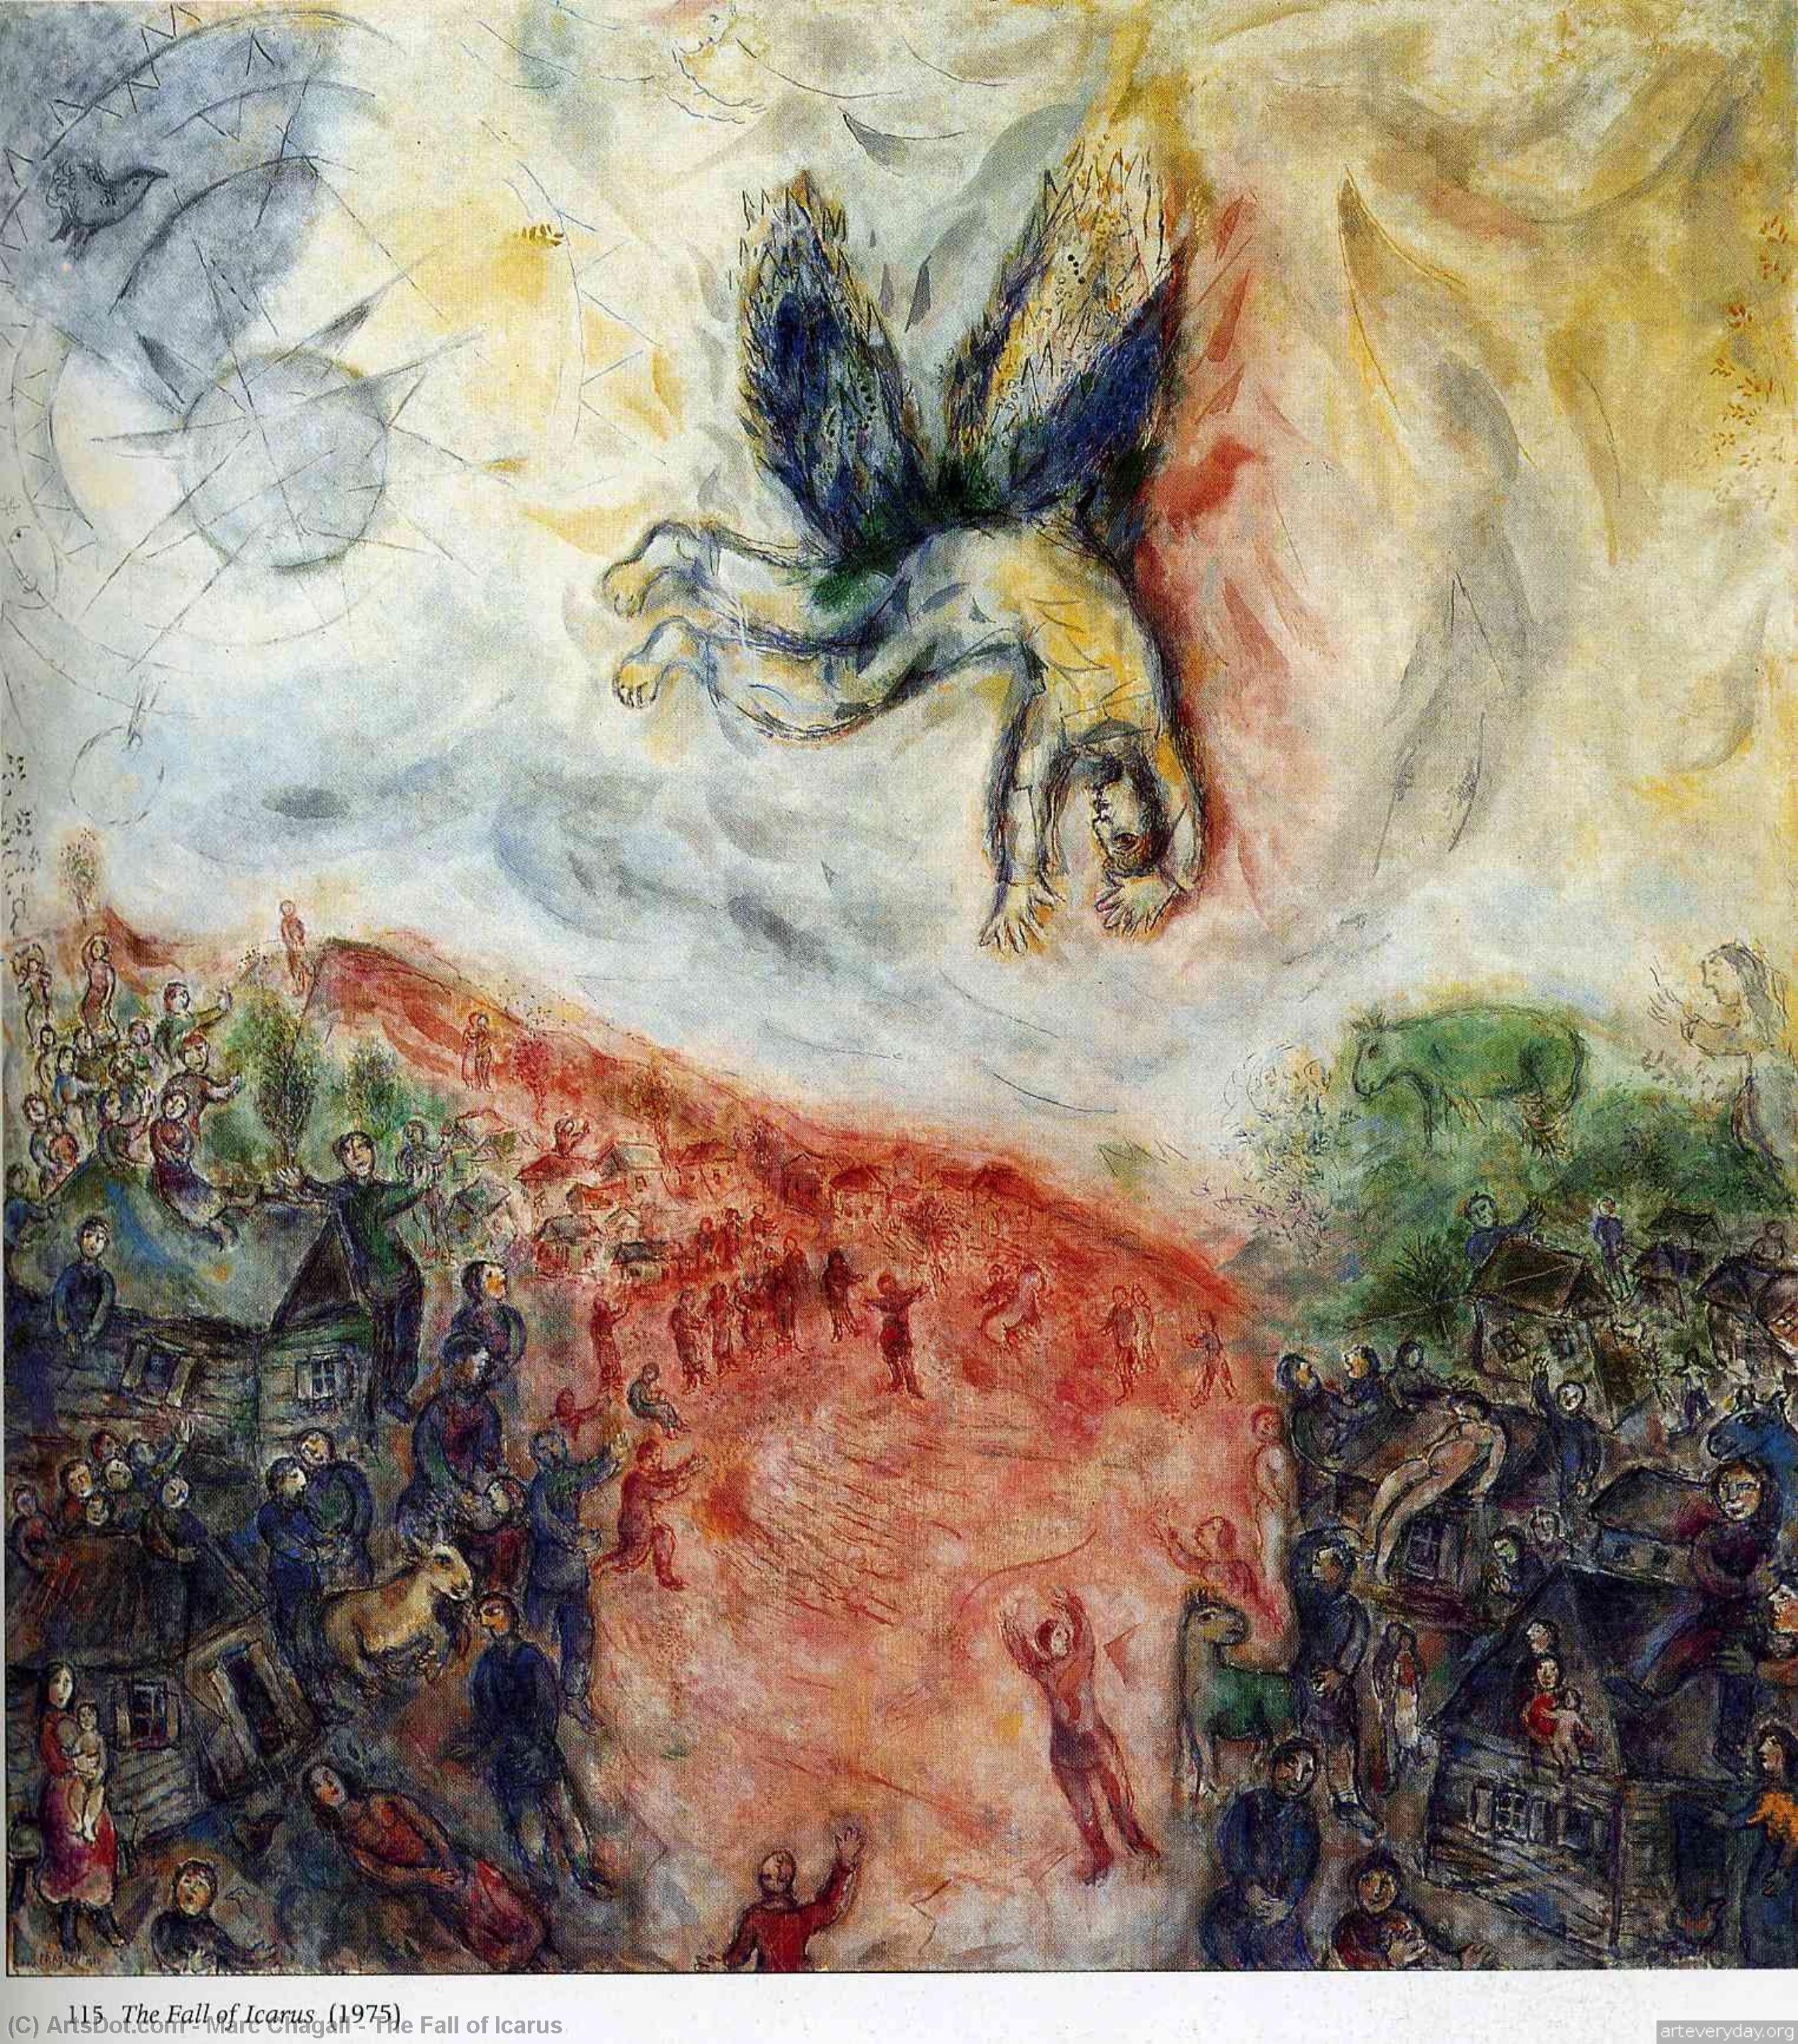 Acheter Reproductions D'art De Musée La chute d`Icare, 1975 de Marc Chagall (Inspiré par) (1887-1985, Belarus) | ArtsDot.com